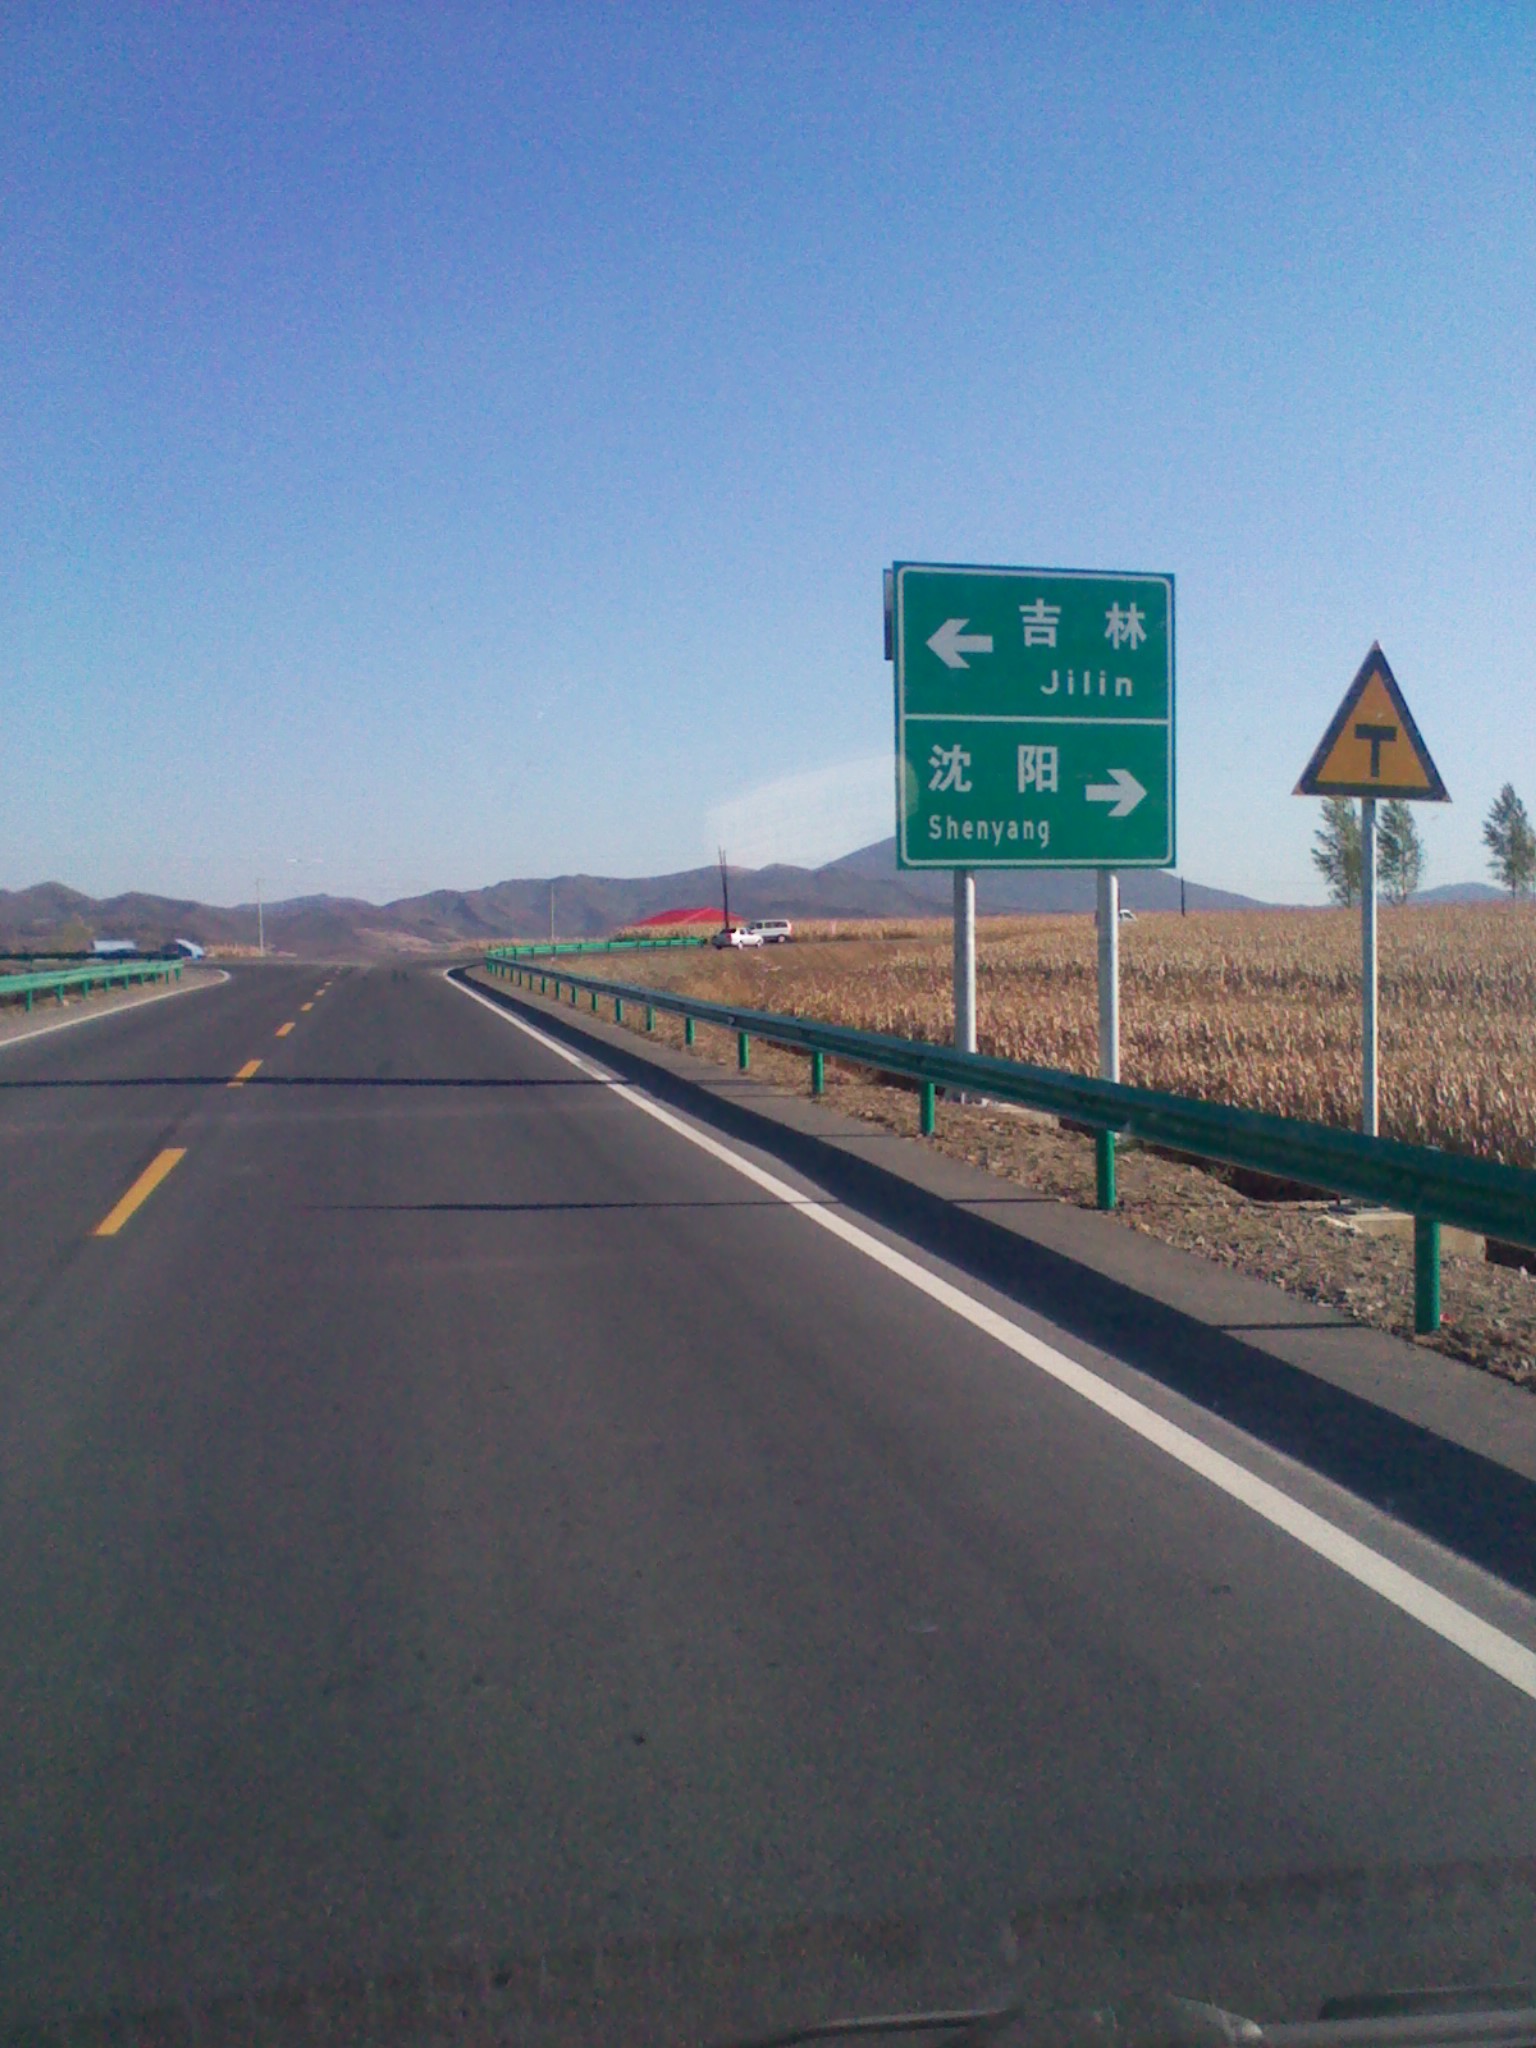 連線吉林市和瀋陽最快捷的新通道